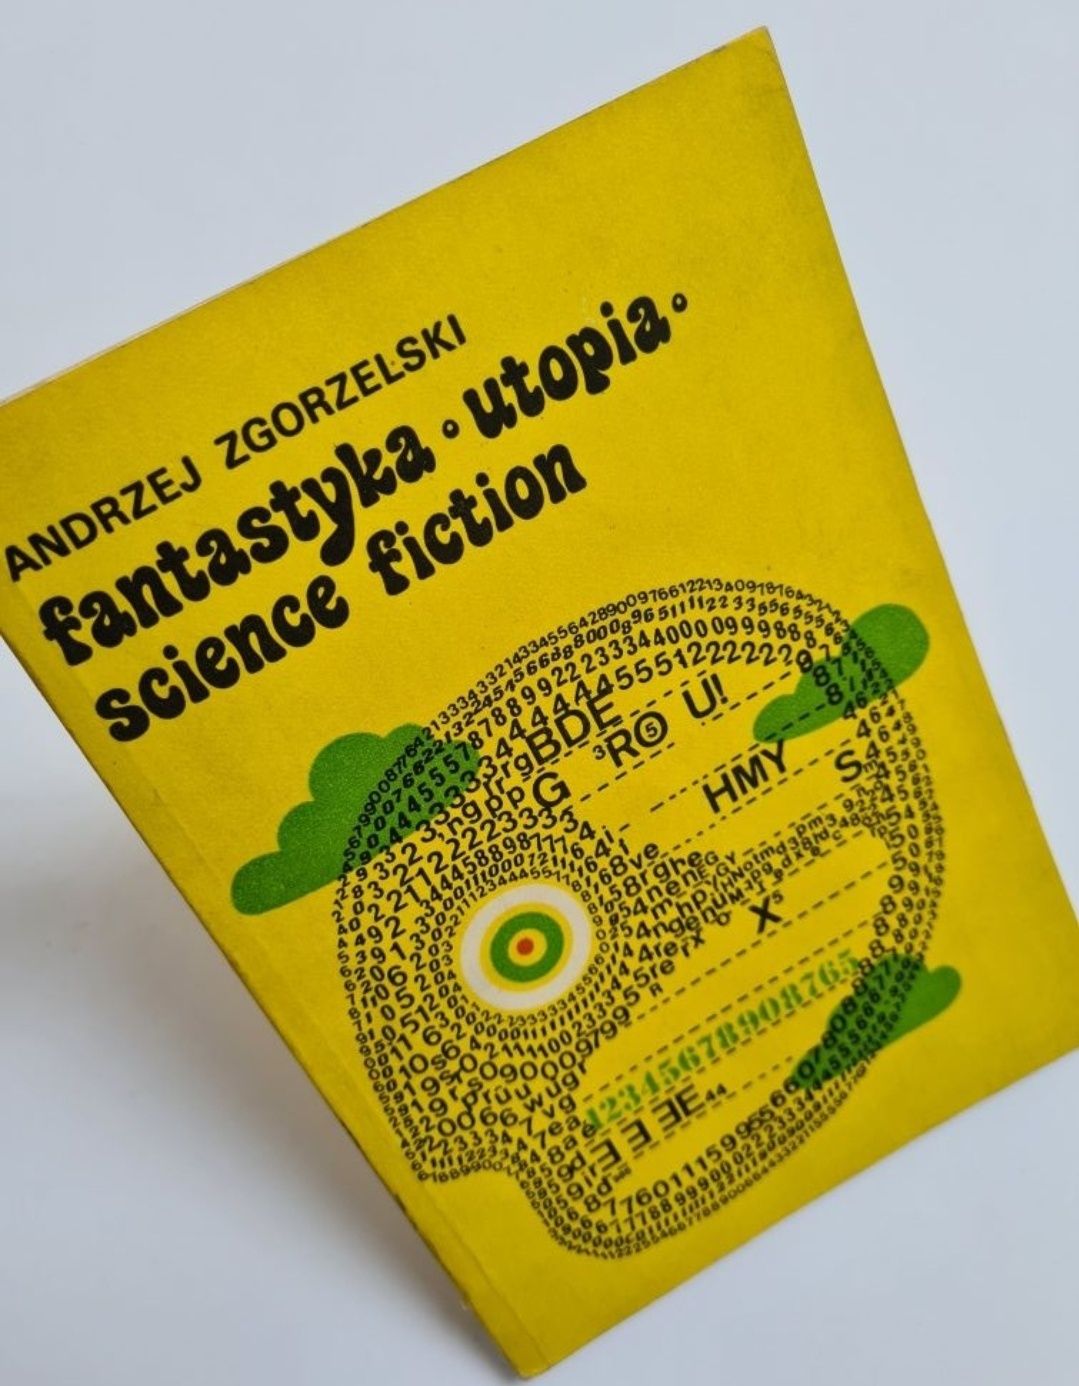 Fantastyka. Utopia. Science fiction - Andrzej Zgorzelski